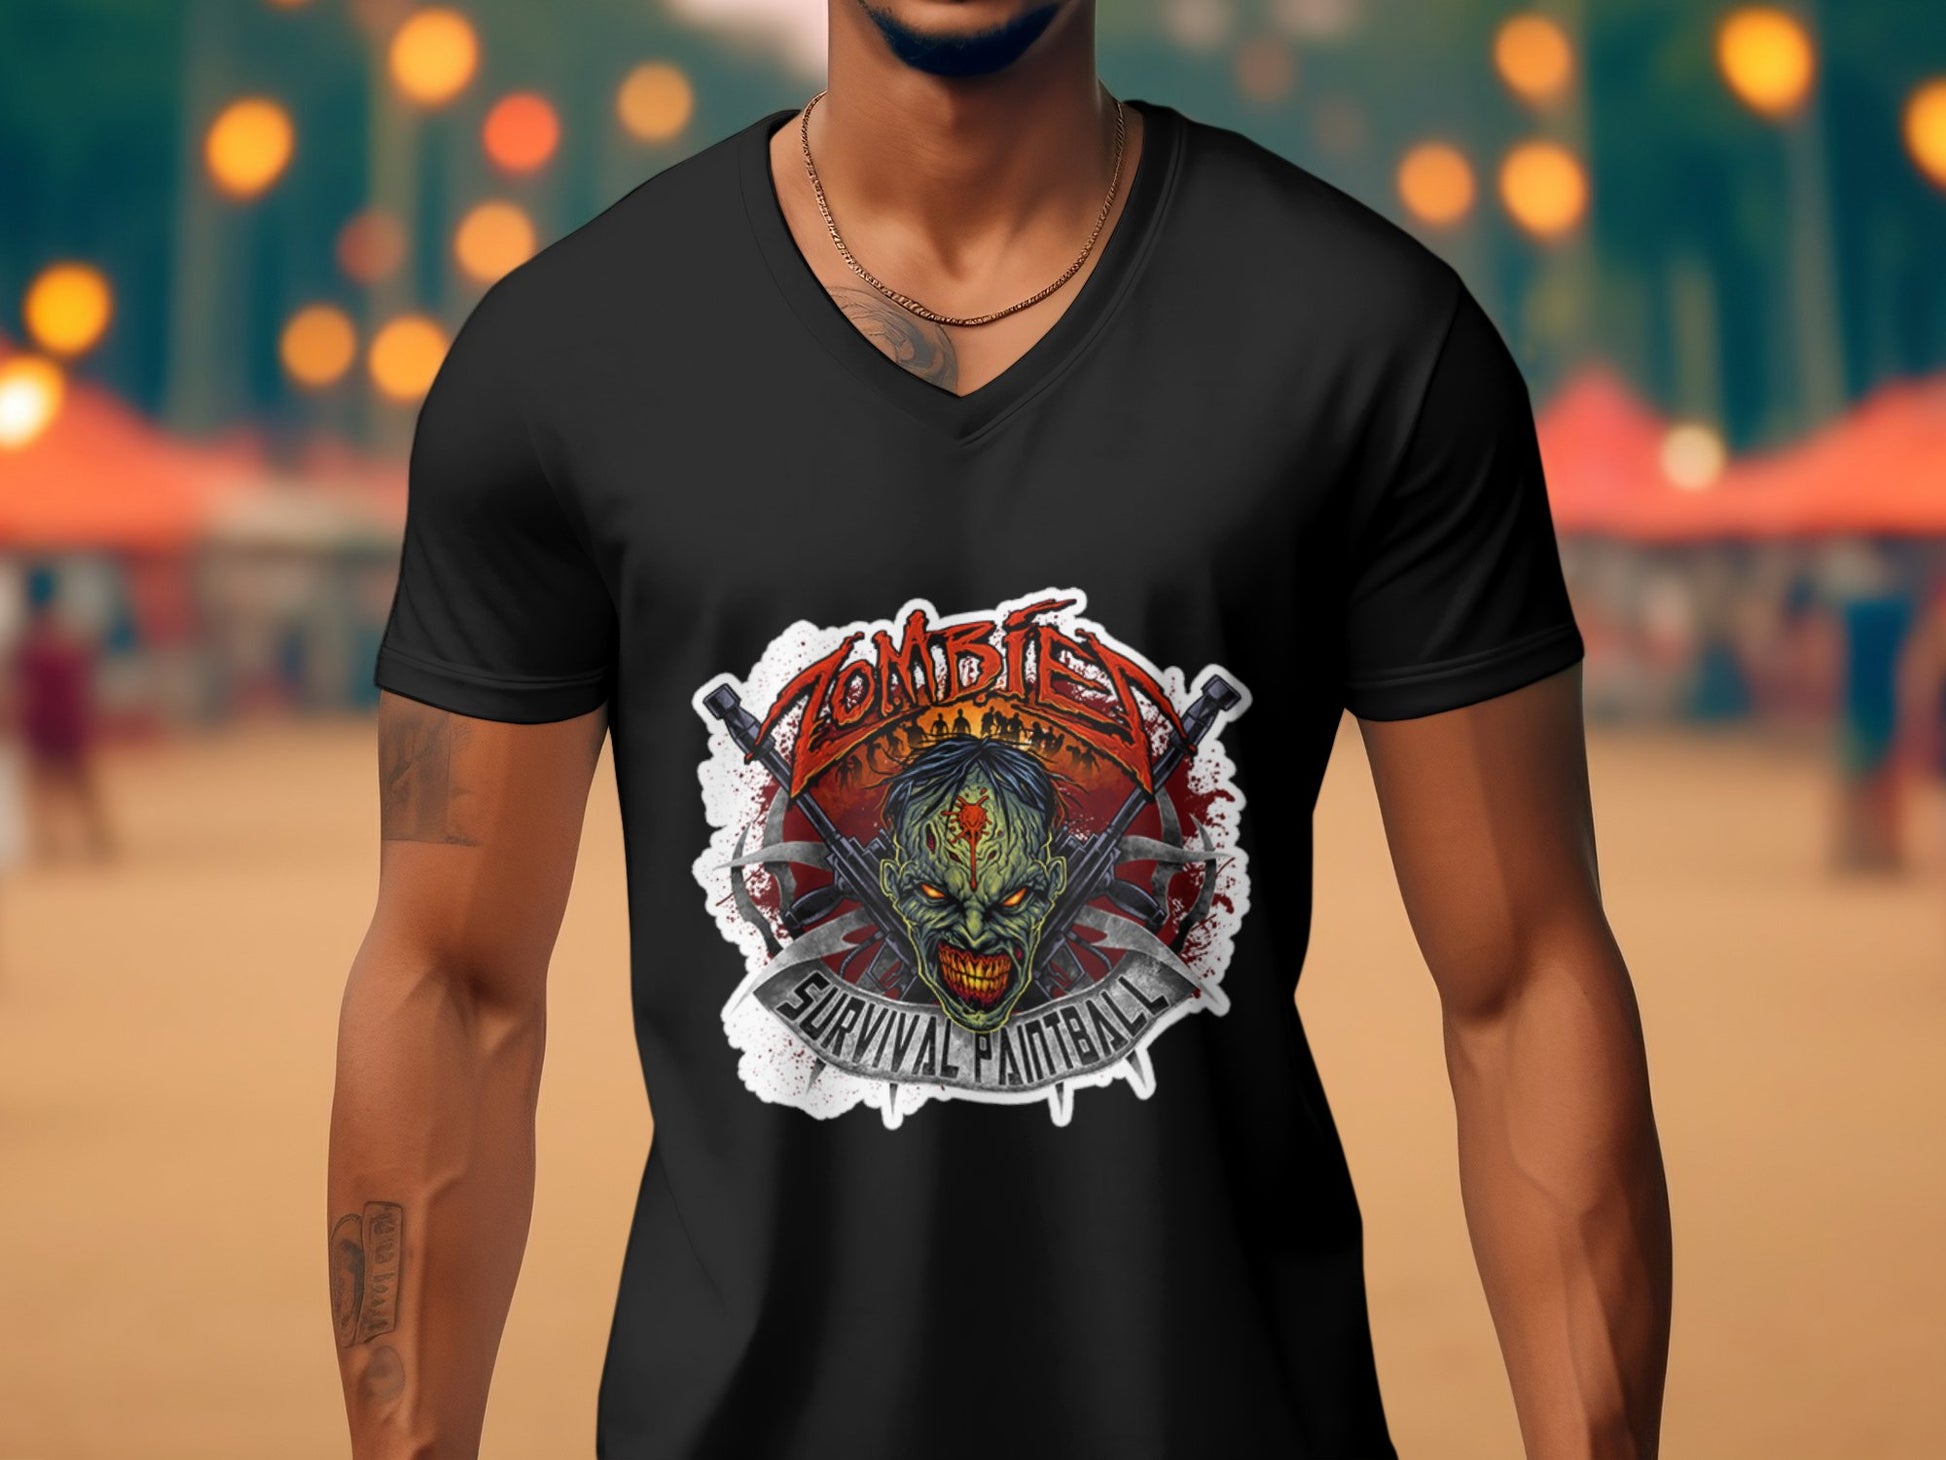 Evil demonic zombie horror monster Halloween Men's tee - Premium t-shirt from Lees Krazy Teez - Just $19.95! Shop now at Lees Krazy Teez